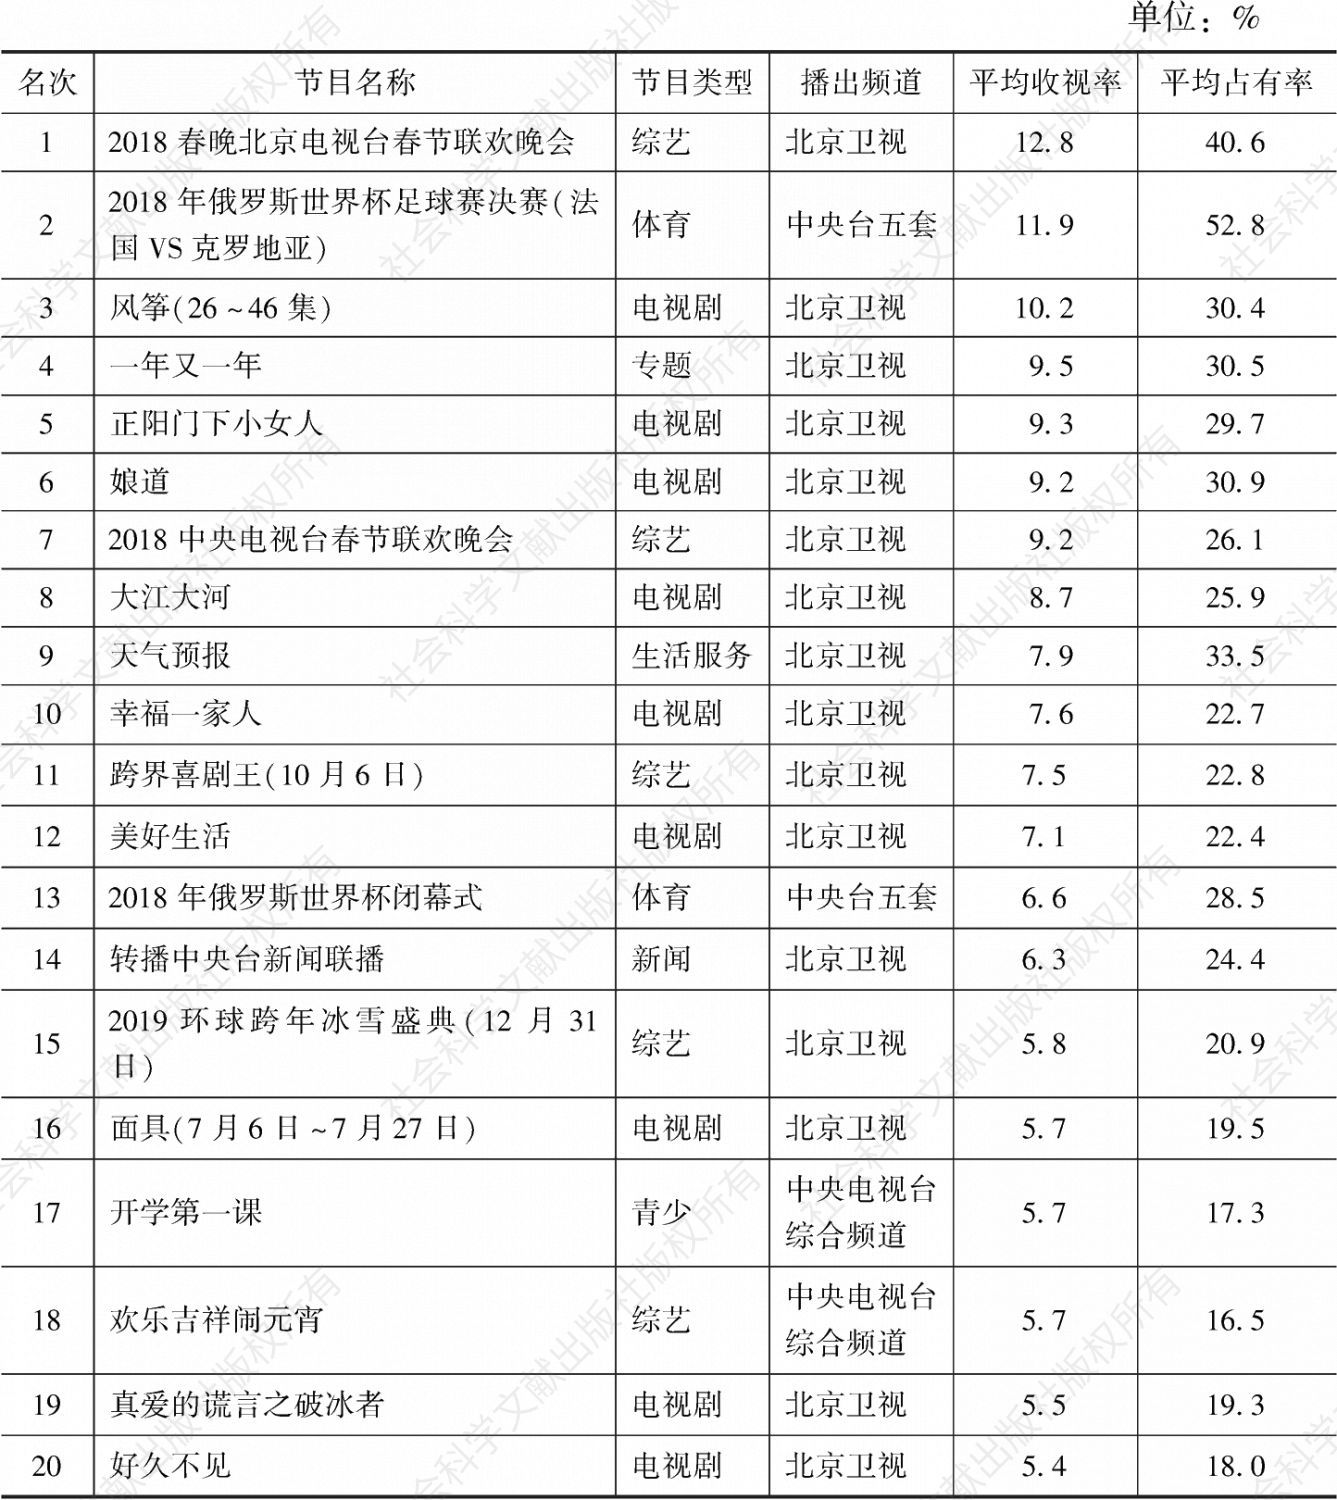 北京2018年所有节目收视率TOP20